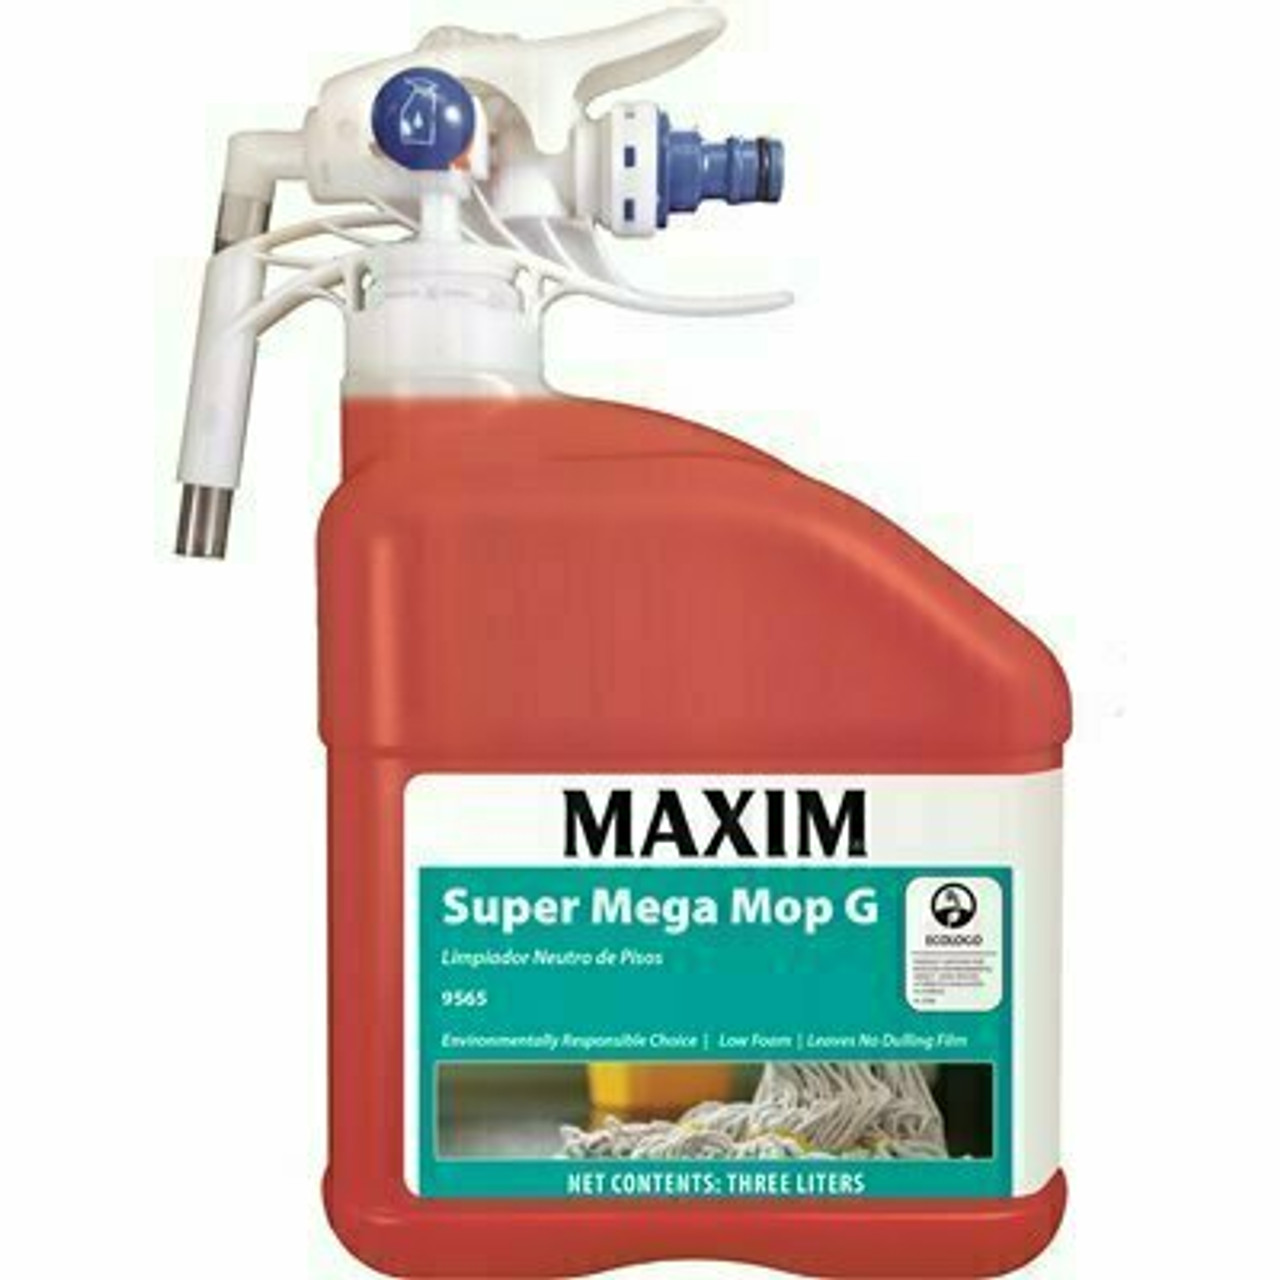 Maxim 101.44 Oz. Super Mega Mop G Neutral Floor Cleaner (2-Pack)